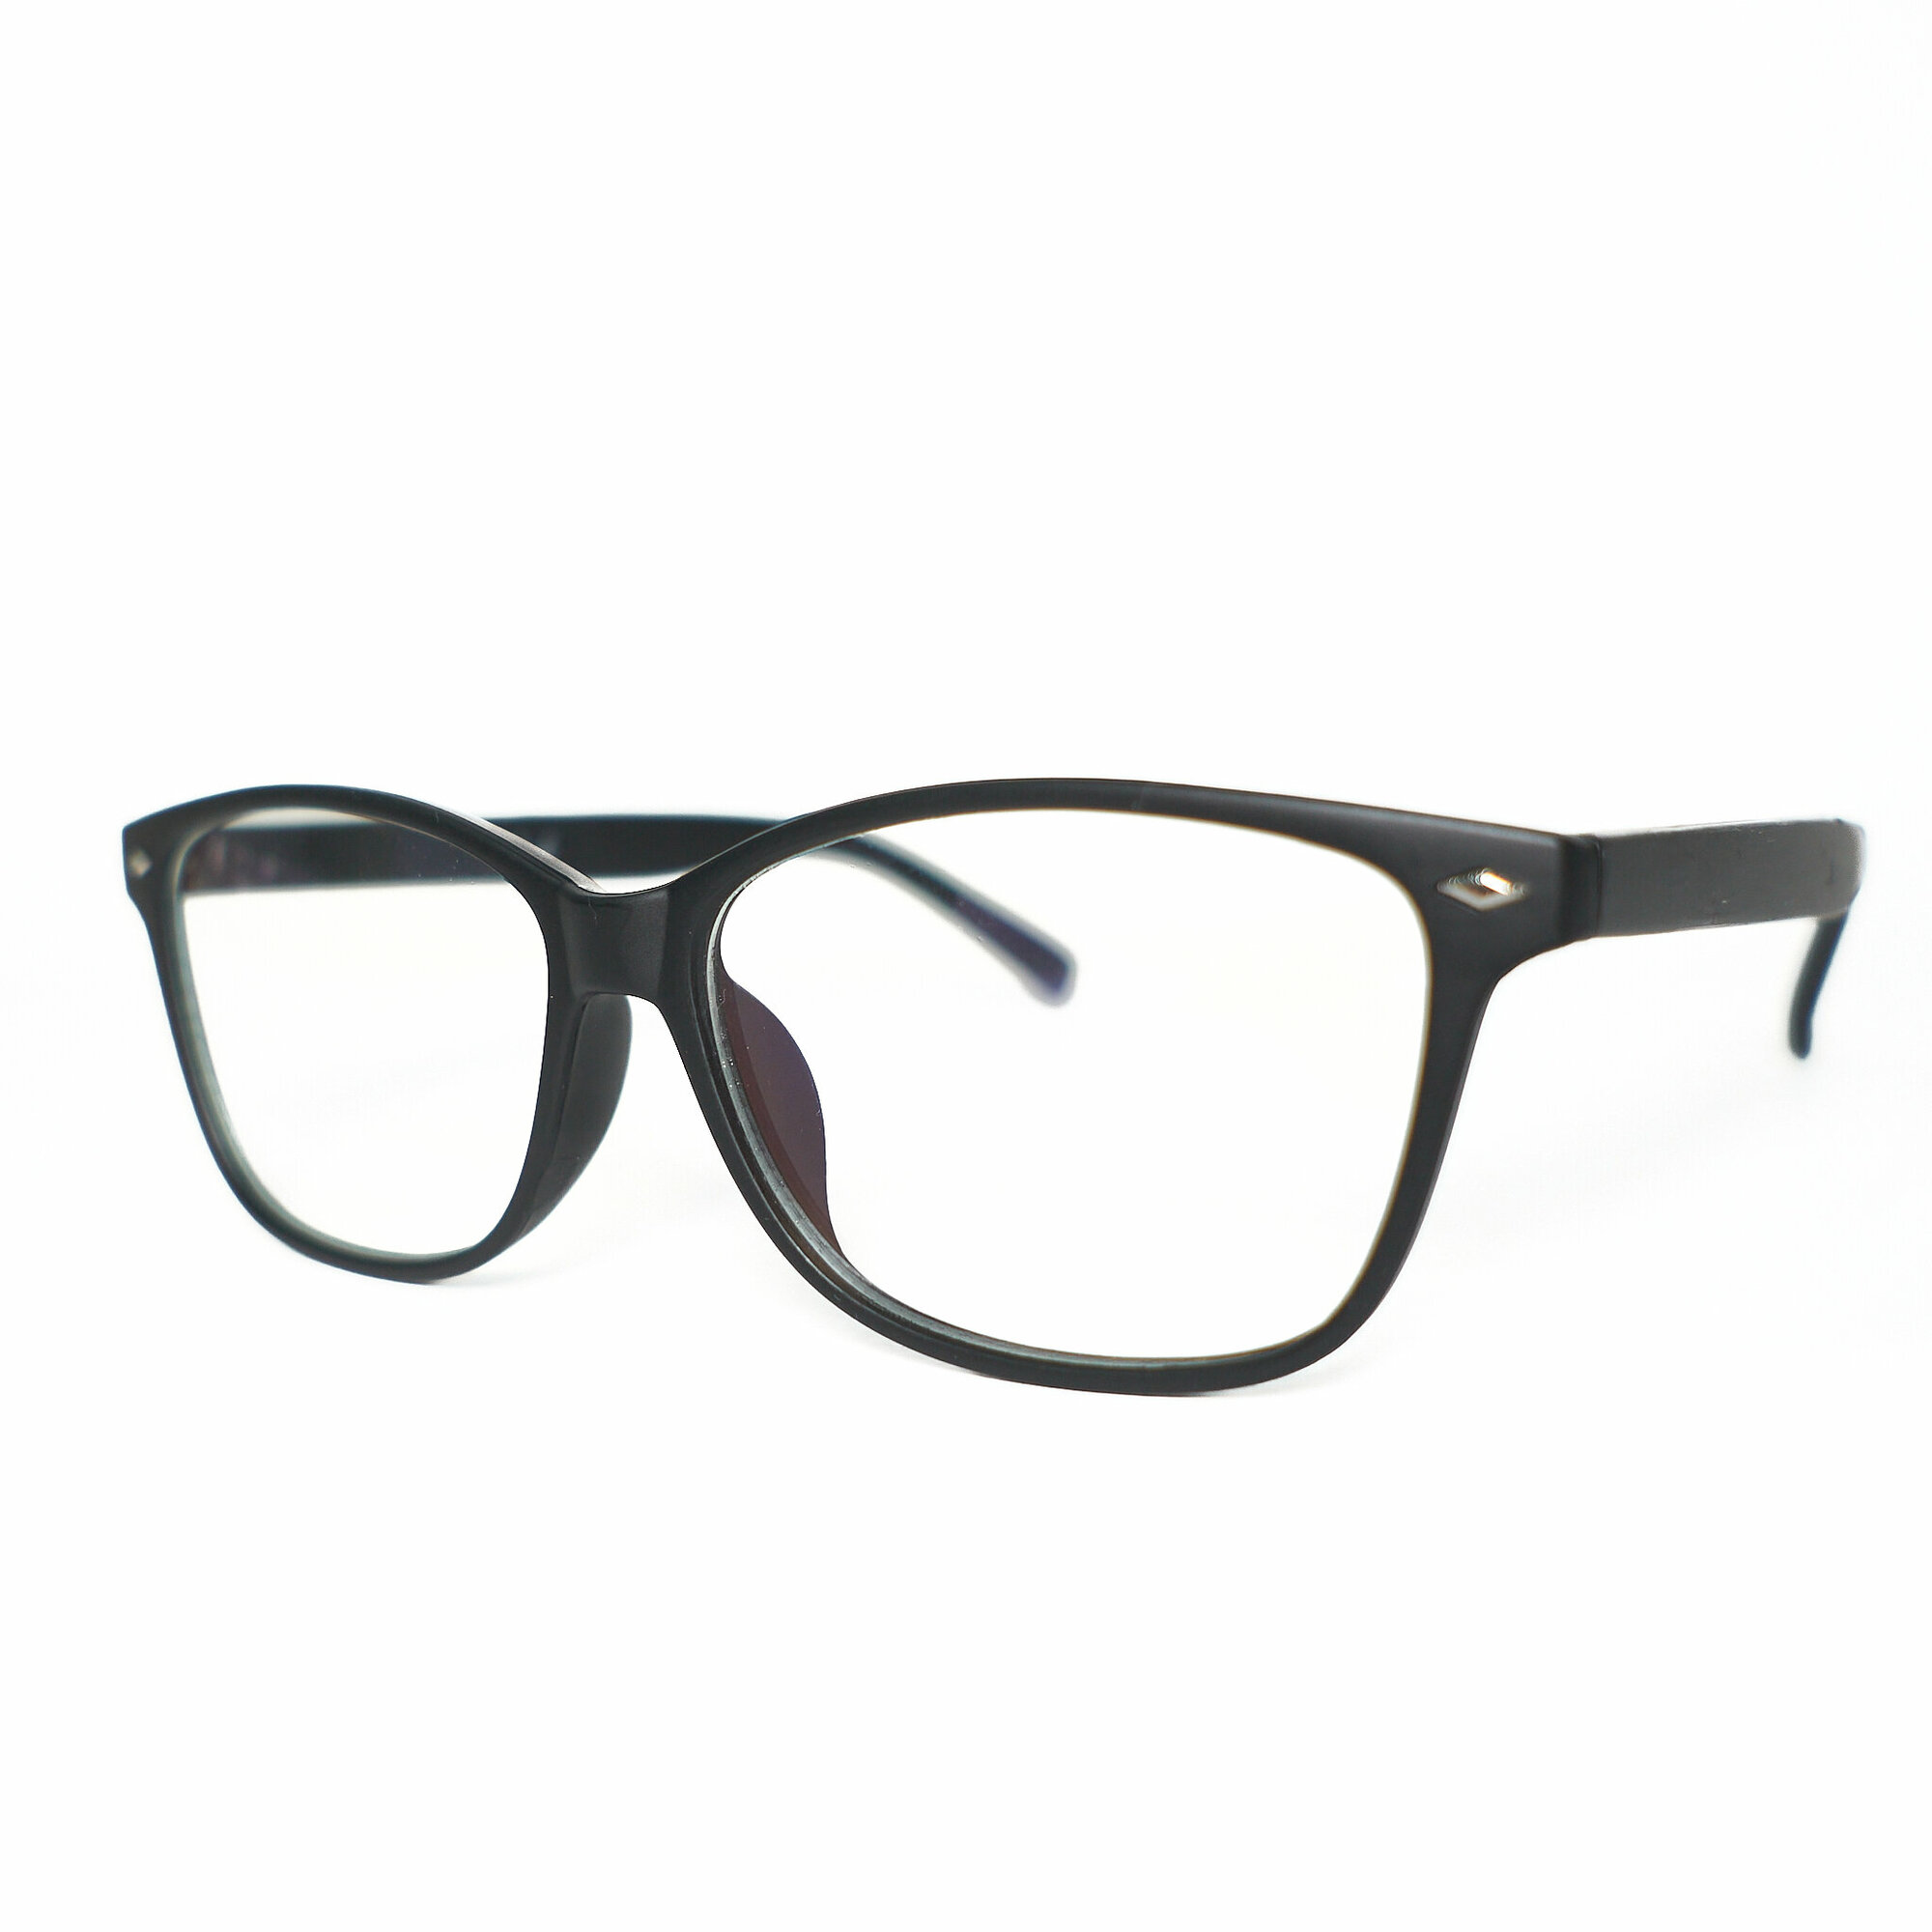 Имиджевые очки. Очки для компьютера, черные, пластик. Прозрачные.